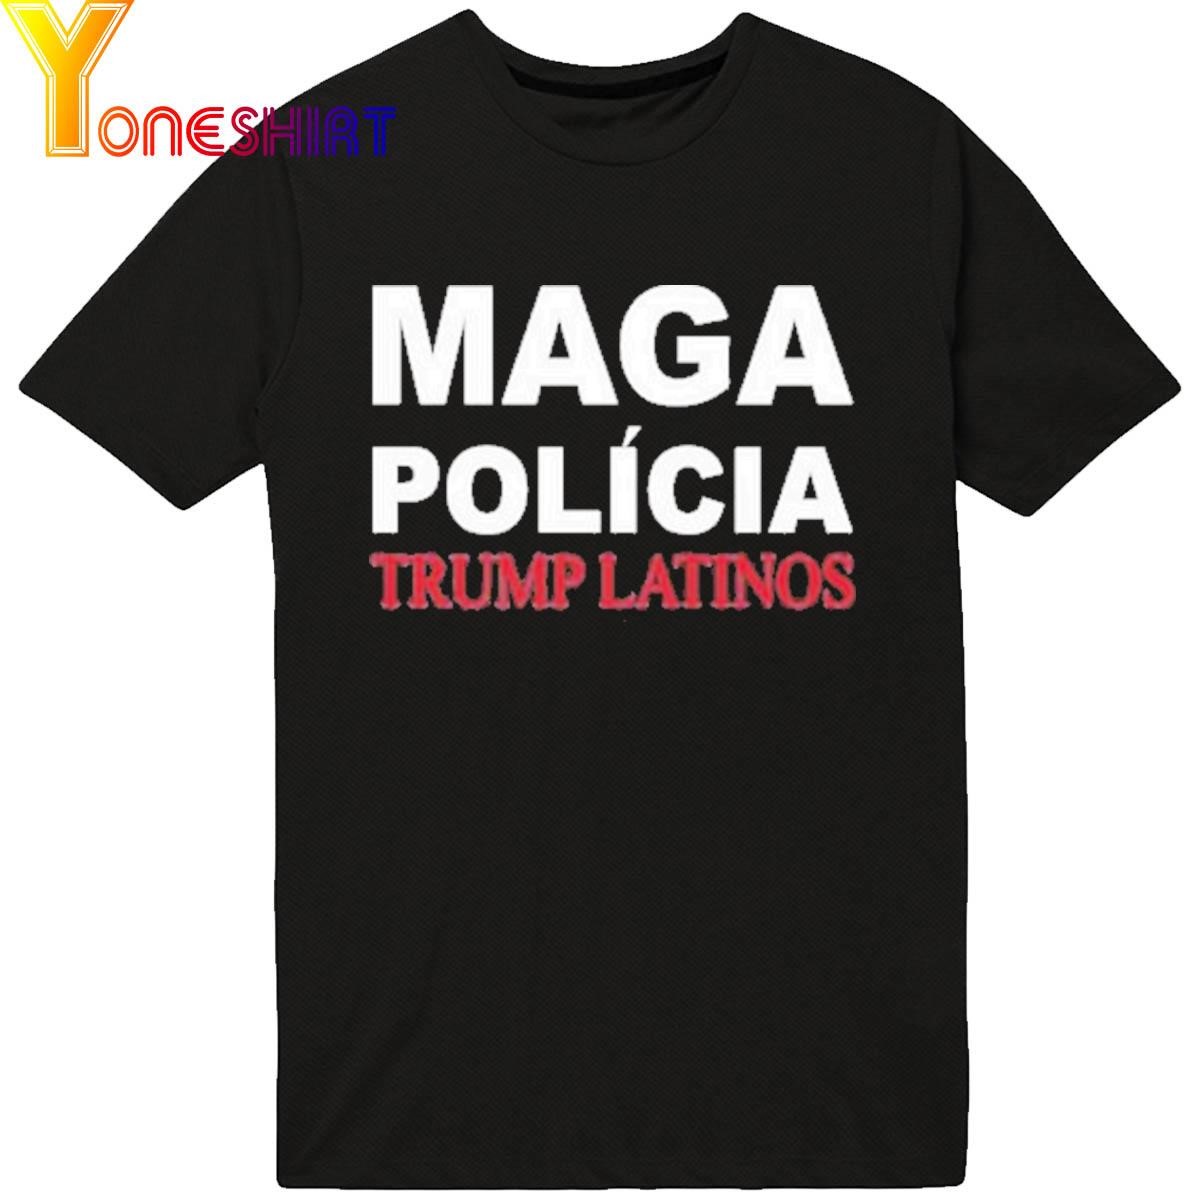 Trump Latinos Maga Polícia Trump Latinos Shirt